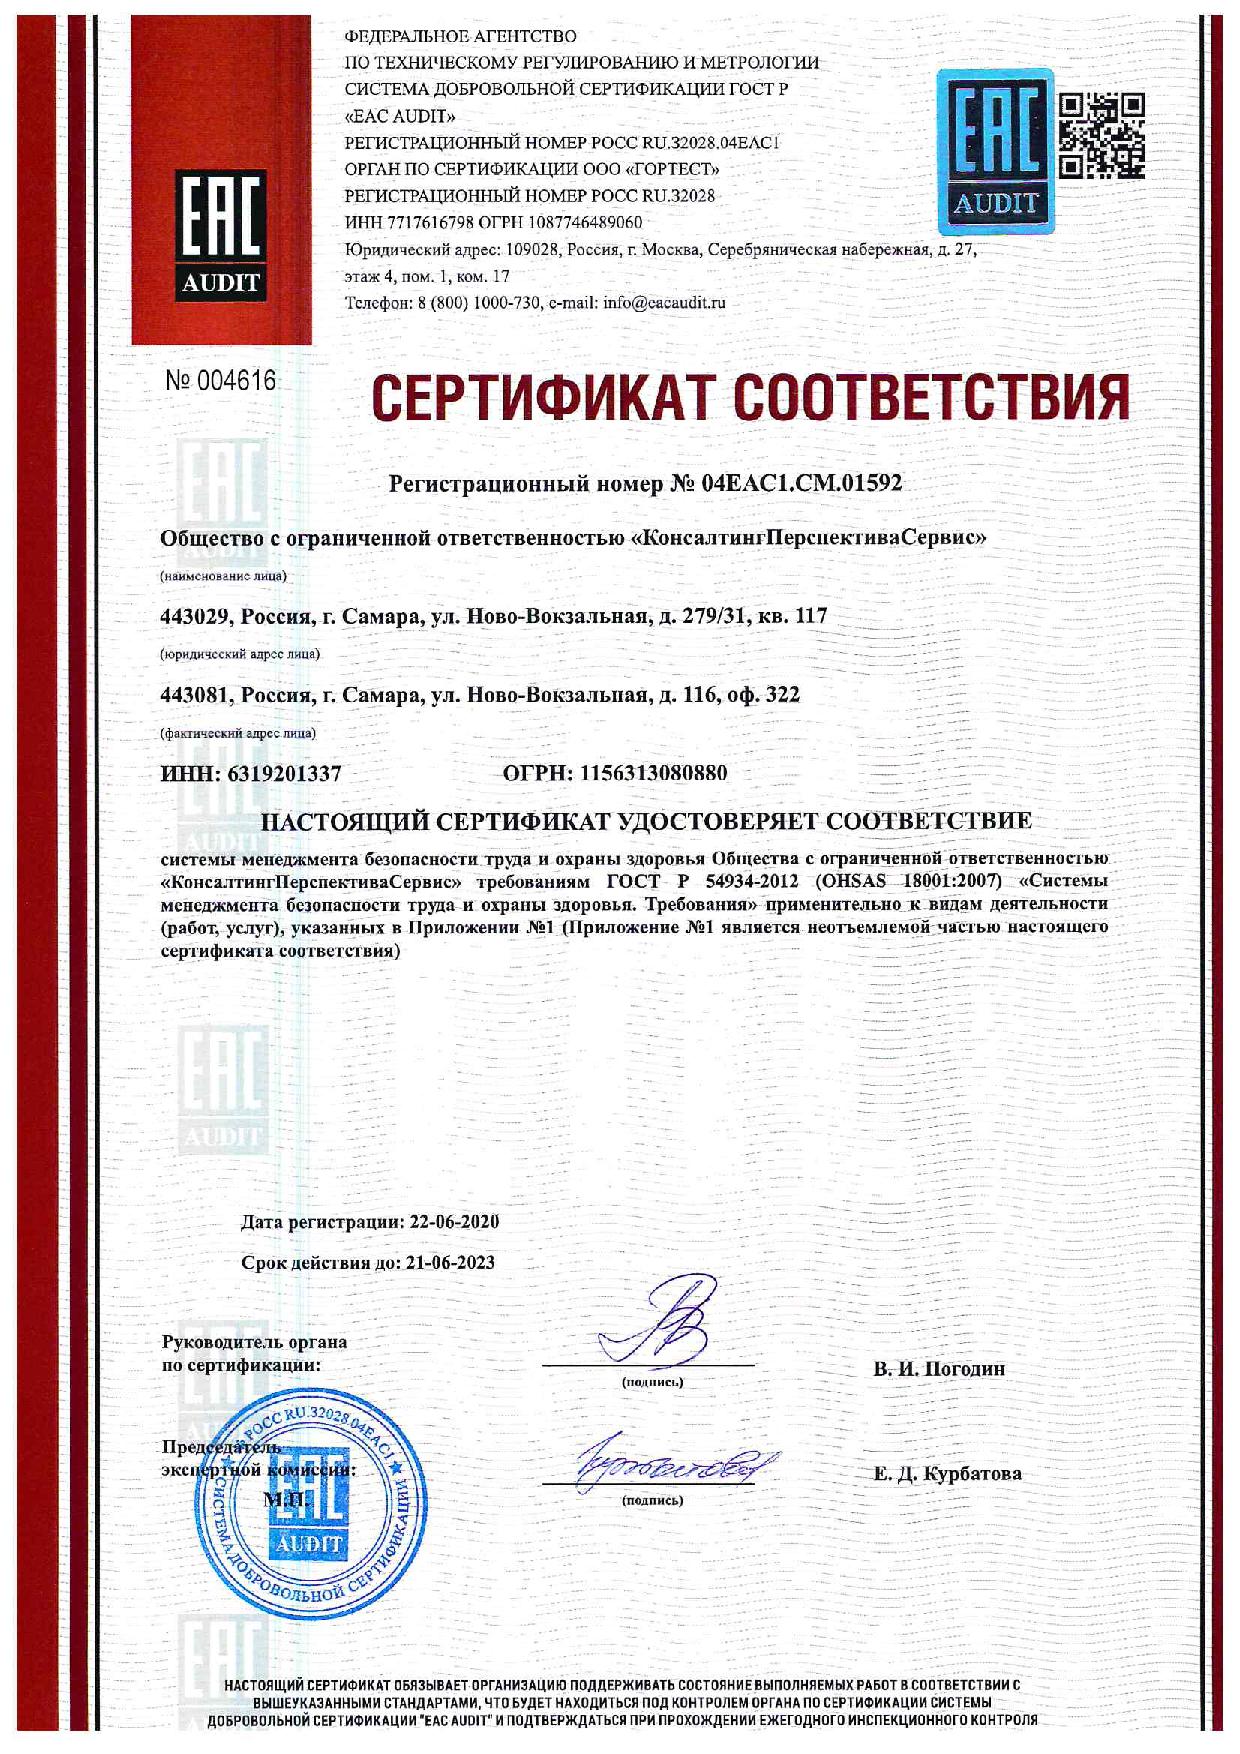 Сертификат соответствия системы менеджмента безопасности труда и охраны здоровья